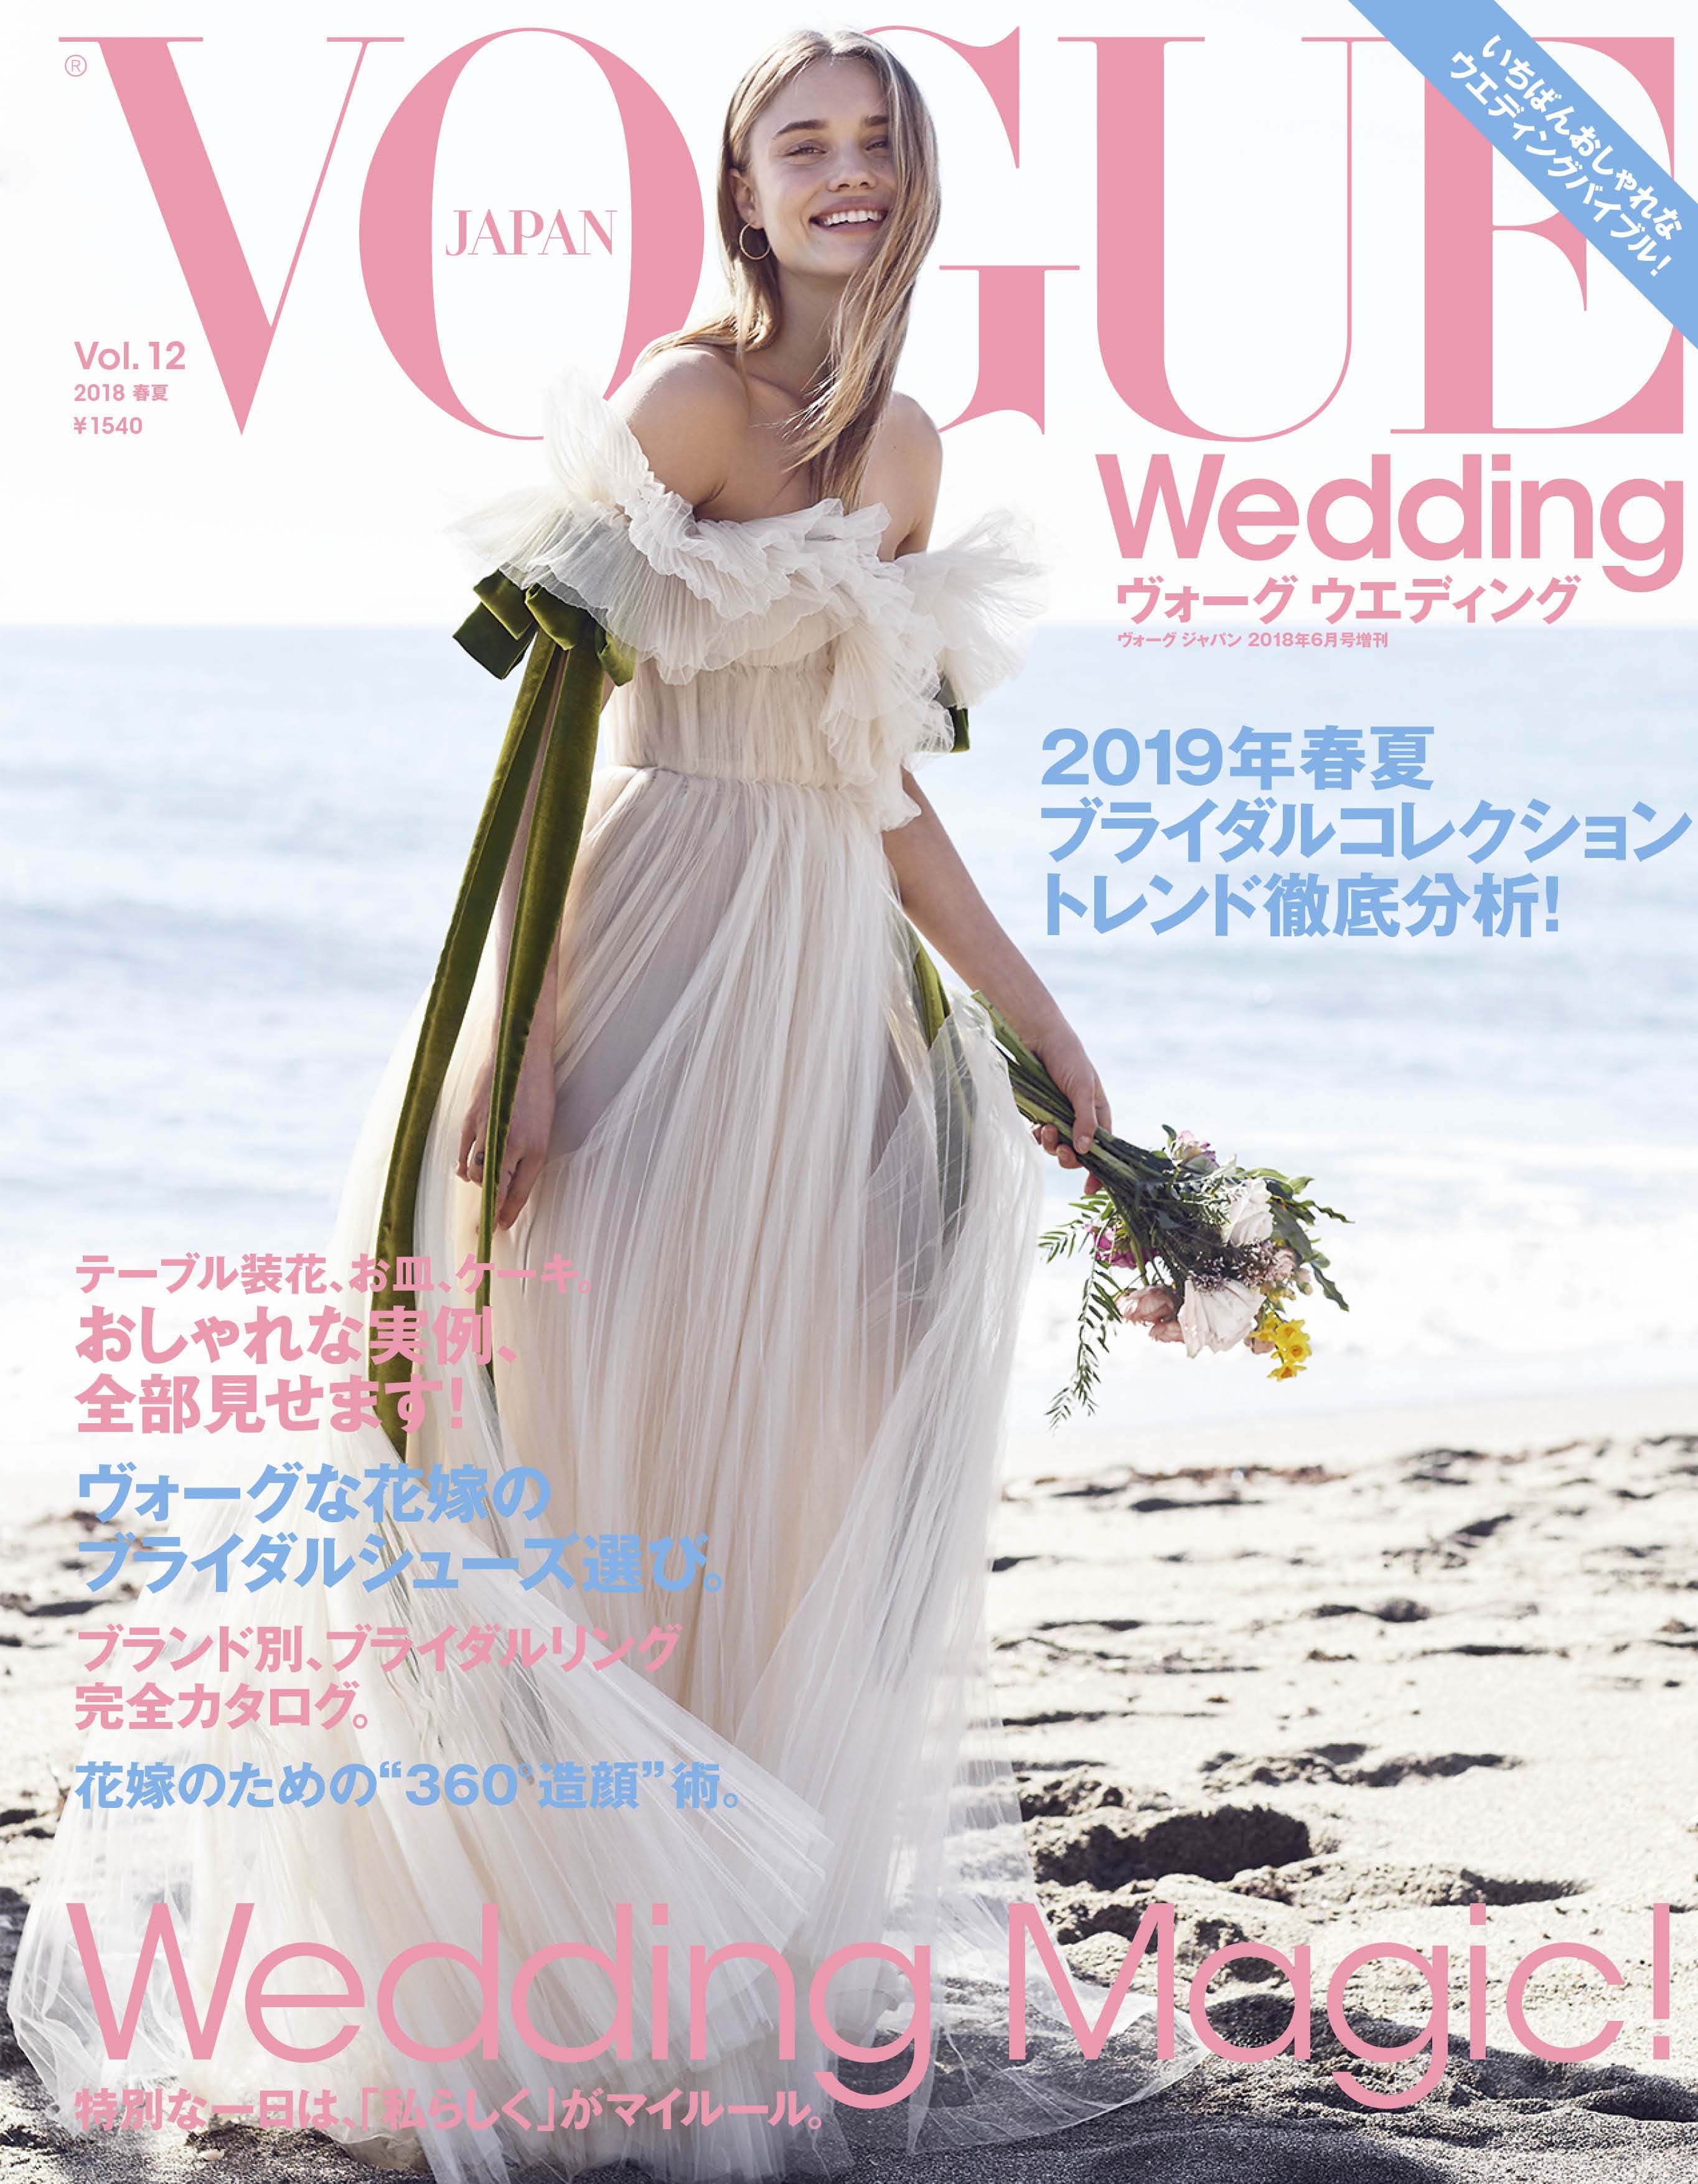 コンデナスト・ジャパン - 『VOGUE Wedding』 Vol.12 2018春夏号 2019